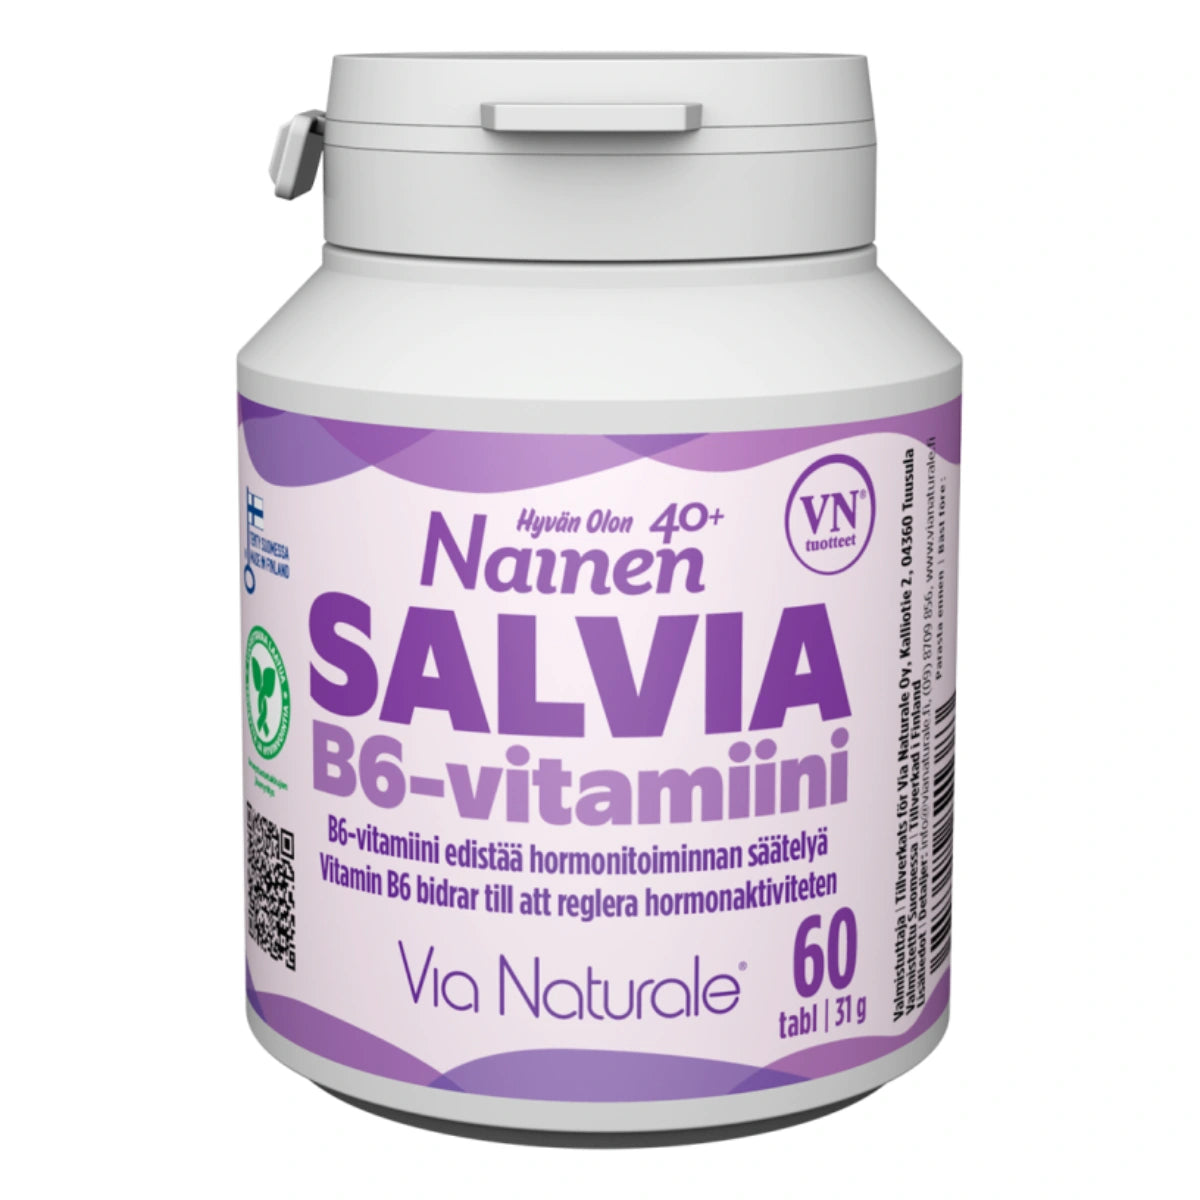 Hyvän Olon Salvia N6-vitamiini tabletti 60 kpl ravintolisä naisille